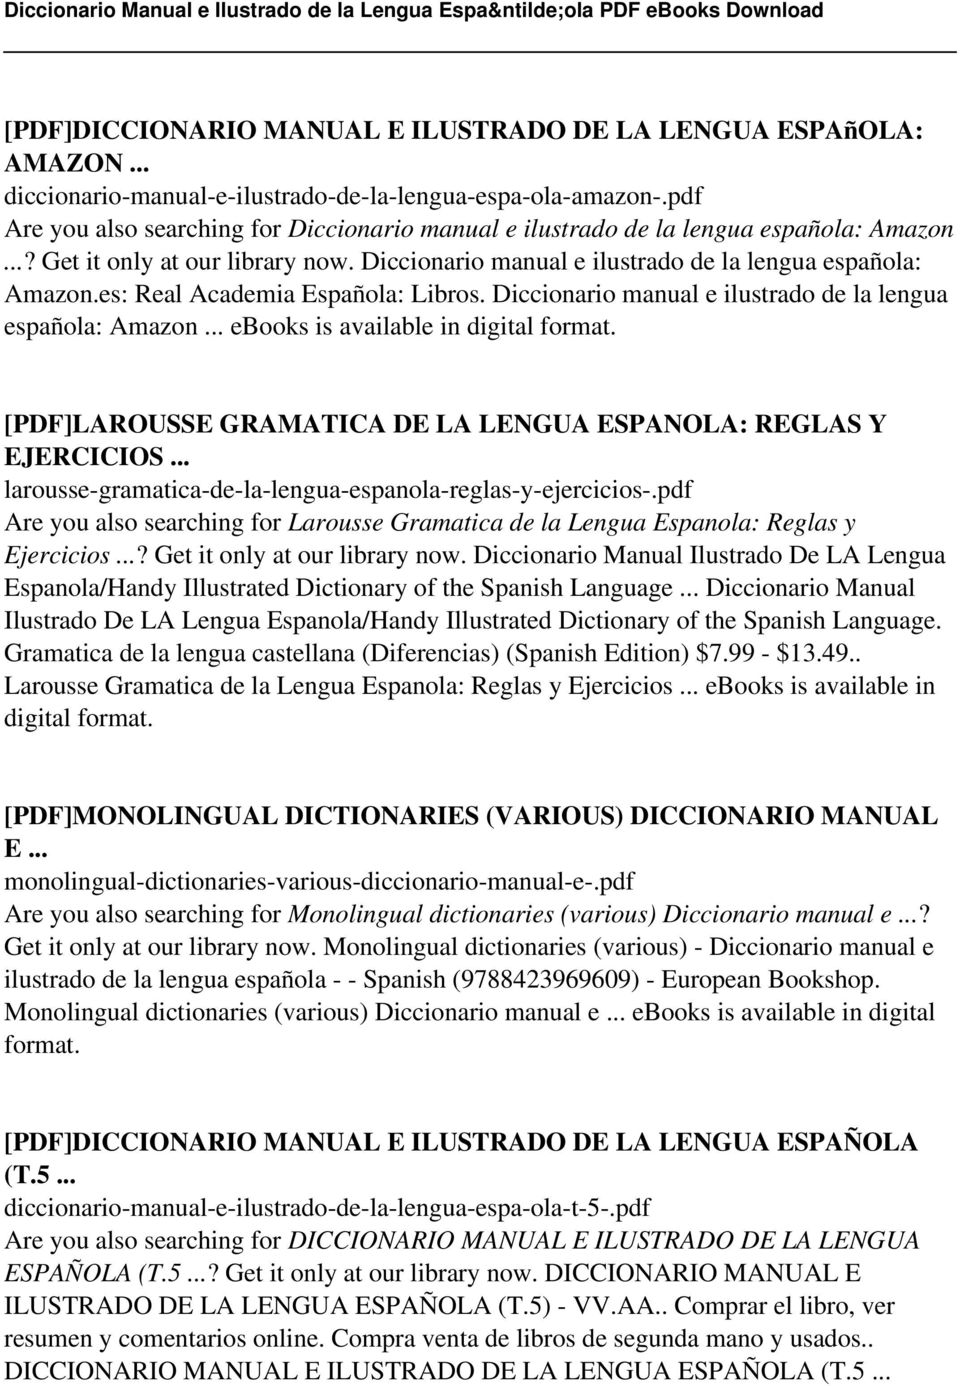 Diccionario manual e ilustrado de la lengua española: Amazon... ebooks is available in [PDF]LAROUSSE GRAMATICA DE LA LENGUA ESPANOLA: REGLAS Y EJERCICIOS.